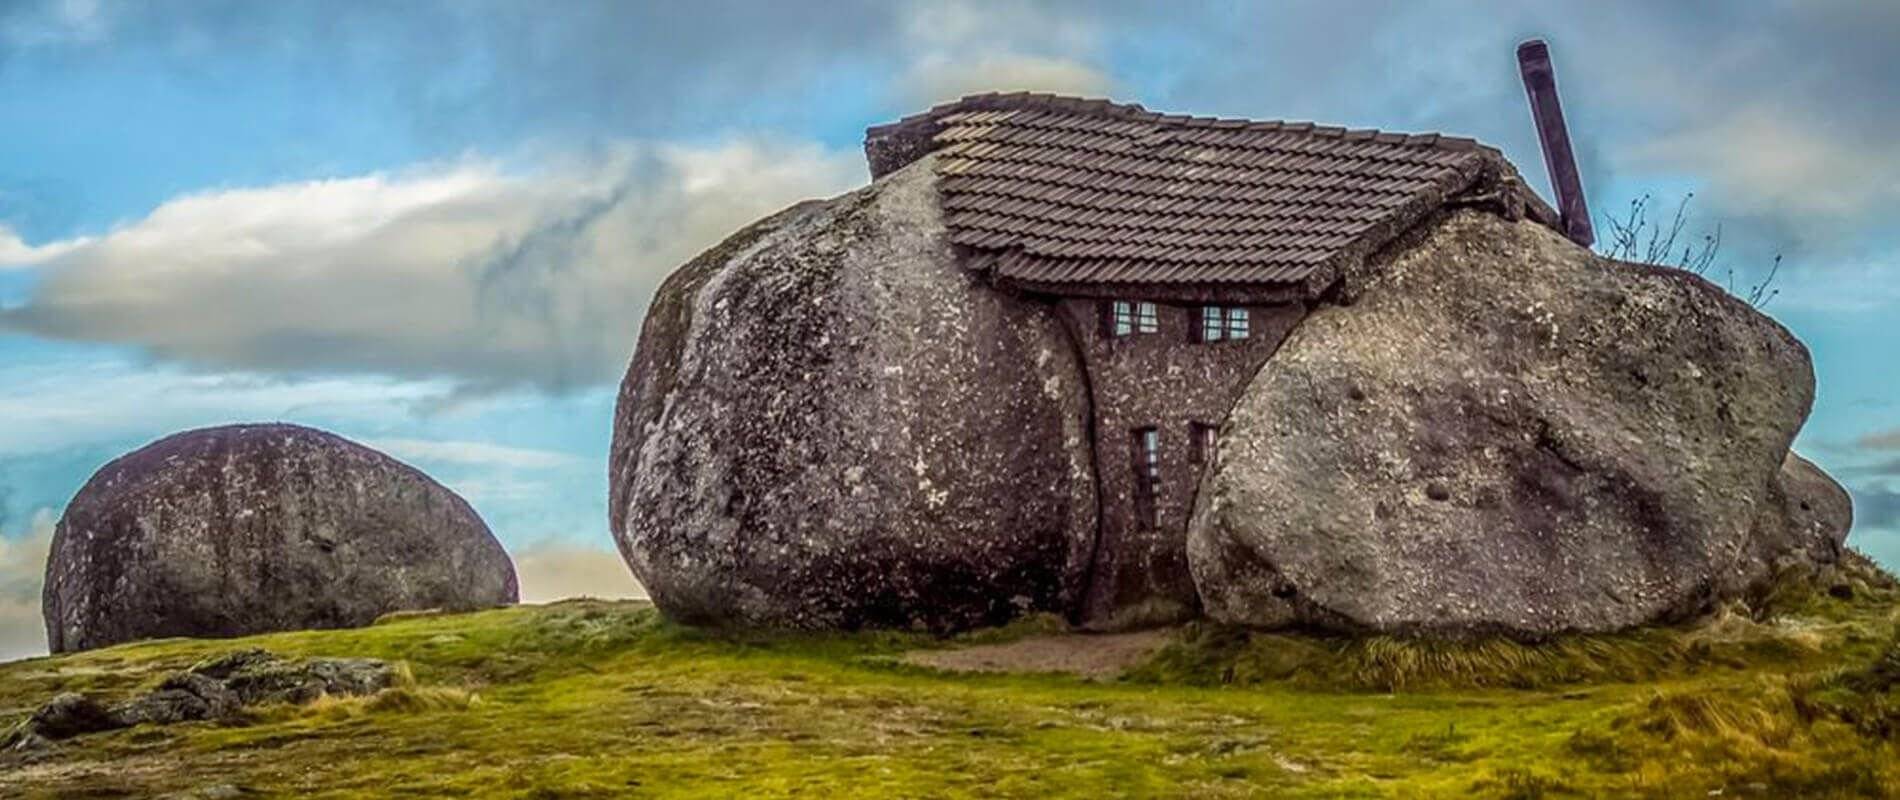 В португалии, в 1973 построен удивительный дом. дом построен между огромными камнями, которые заменяют ему стены.